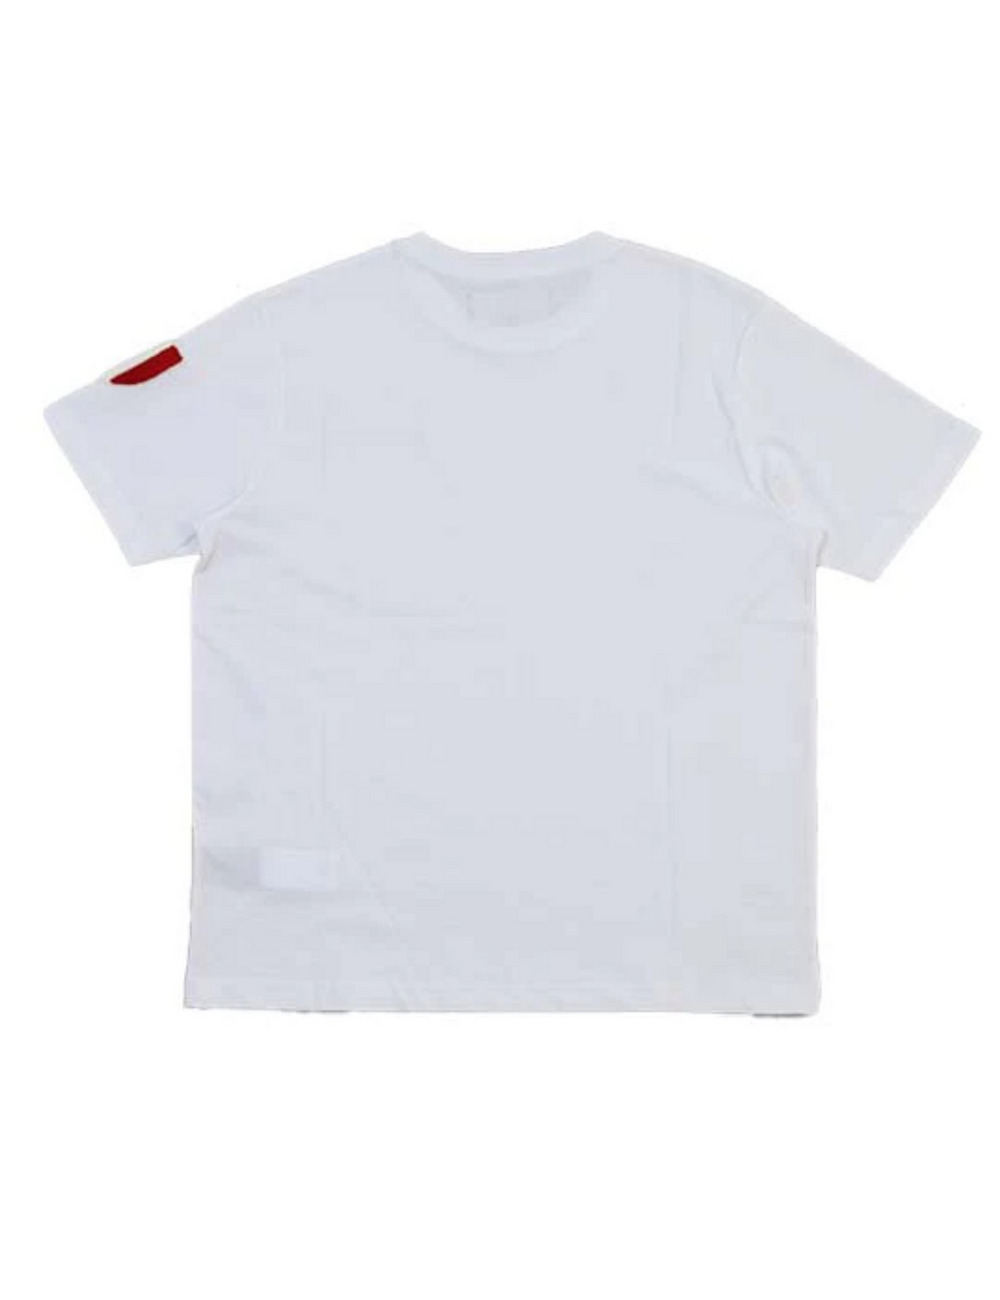 シールドTシャツ(半袖) / SHIELD T SHIRT 詳細画像 ホワイト 2